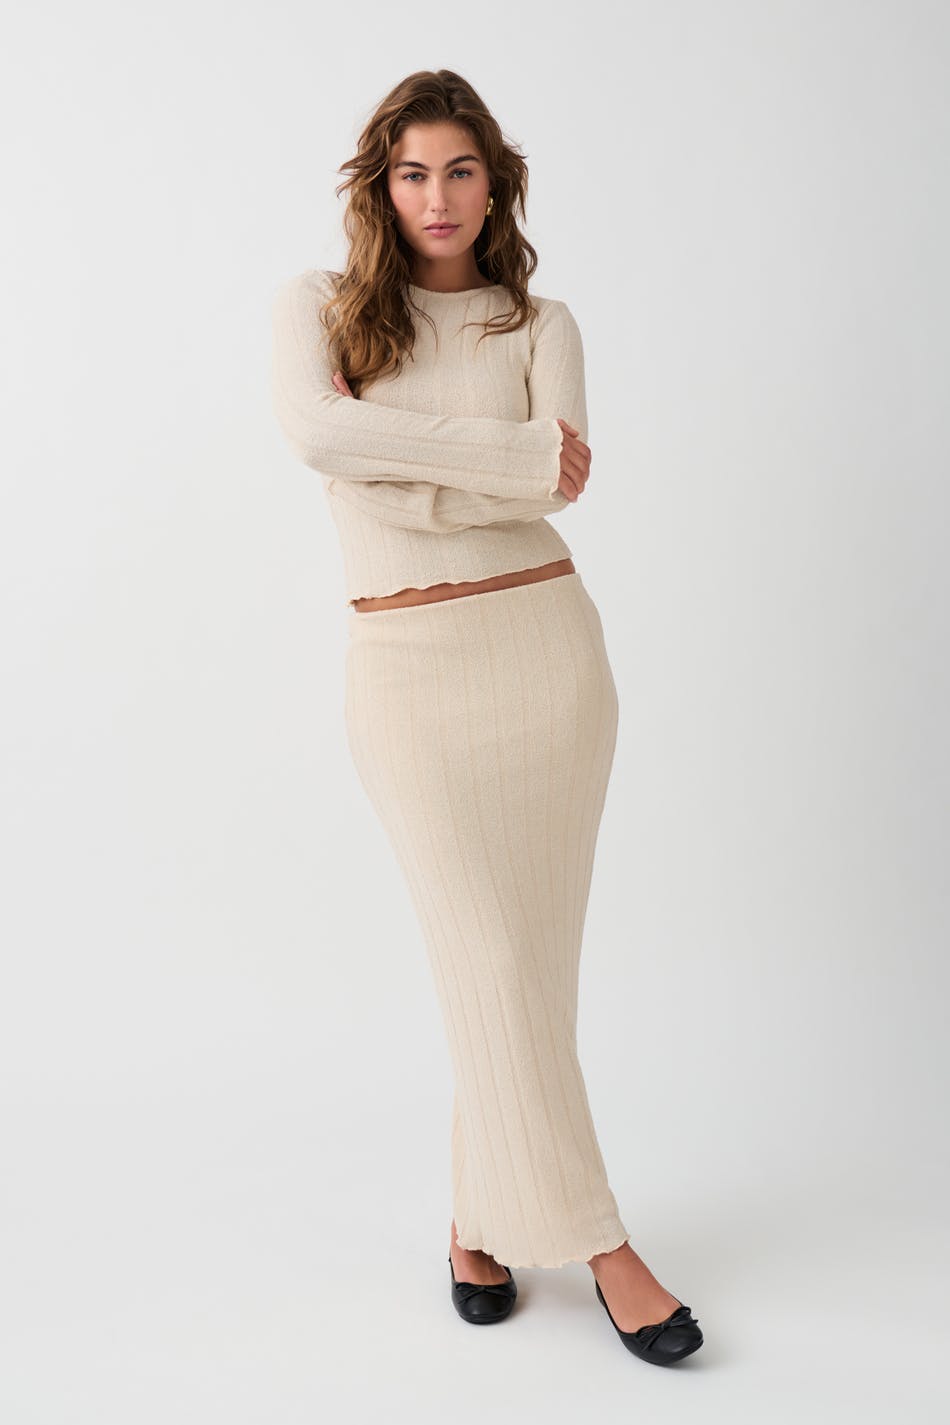 Gina Tricot - Rib skirt - stickade kjolar - Beige - L - Female